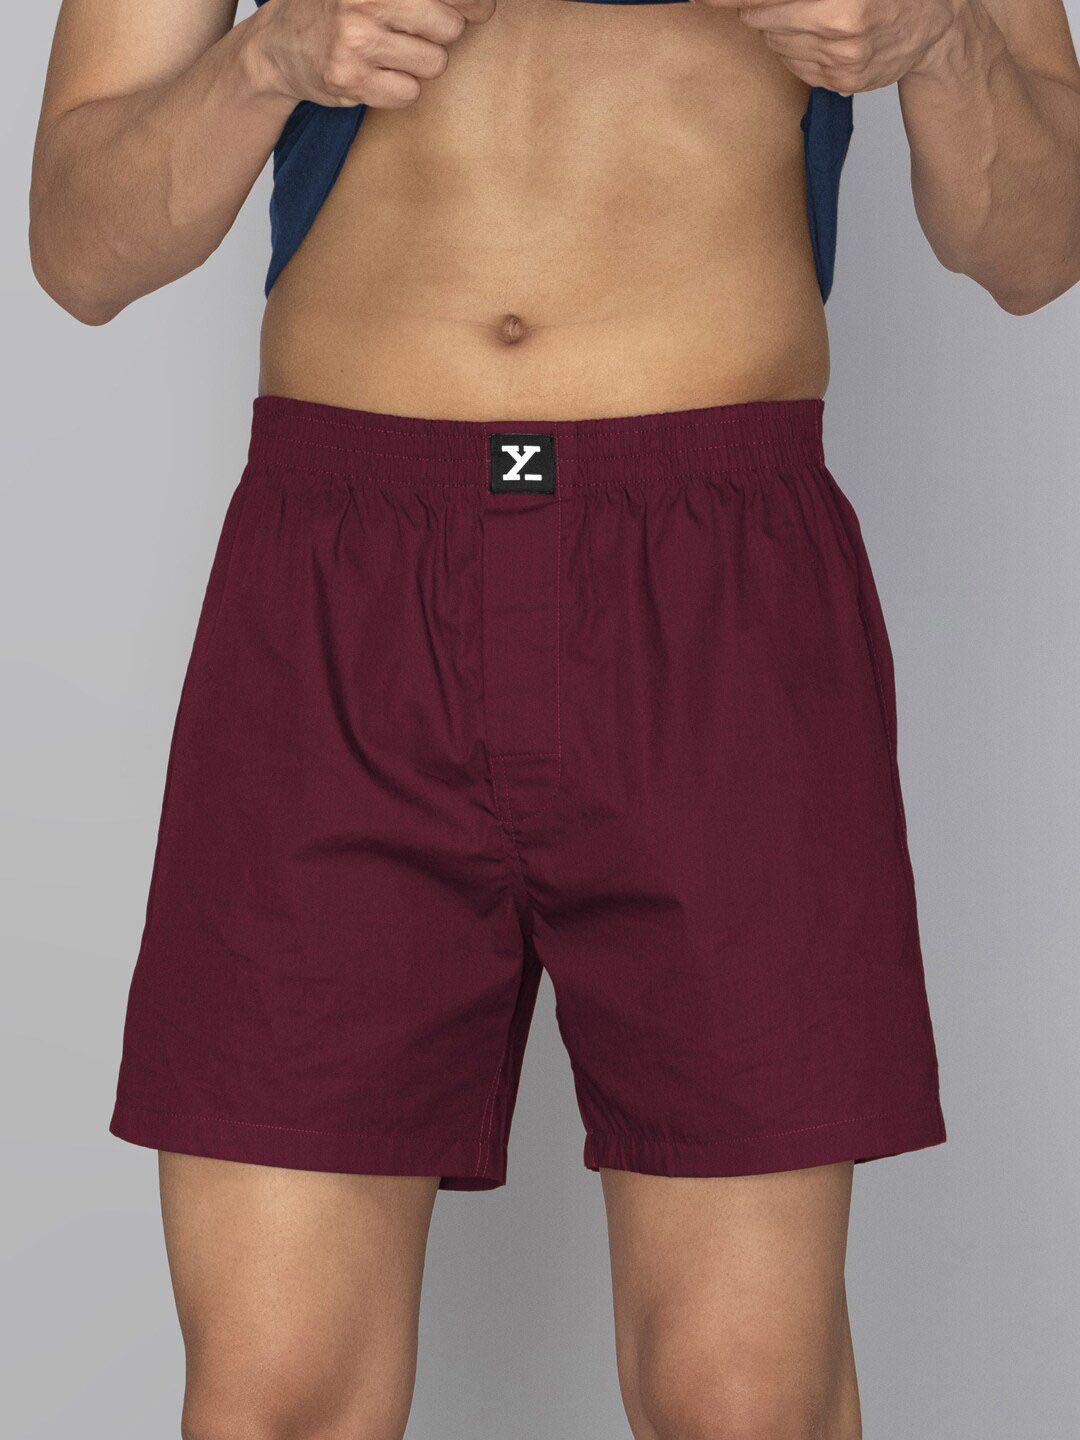 xyxx combed cotton boxers